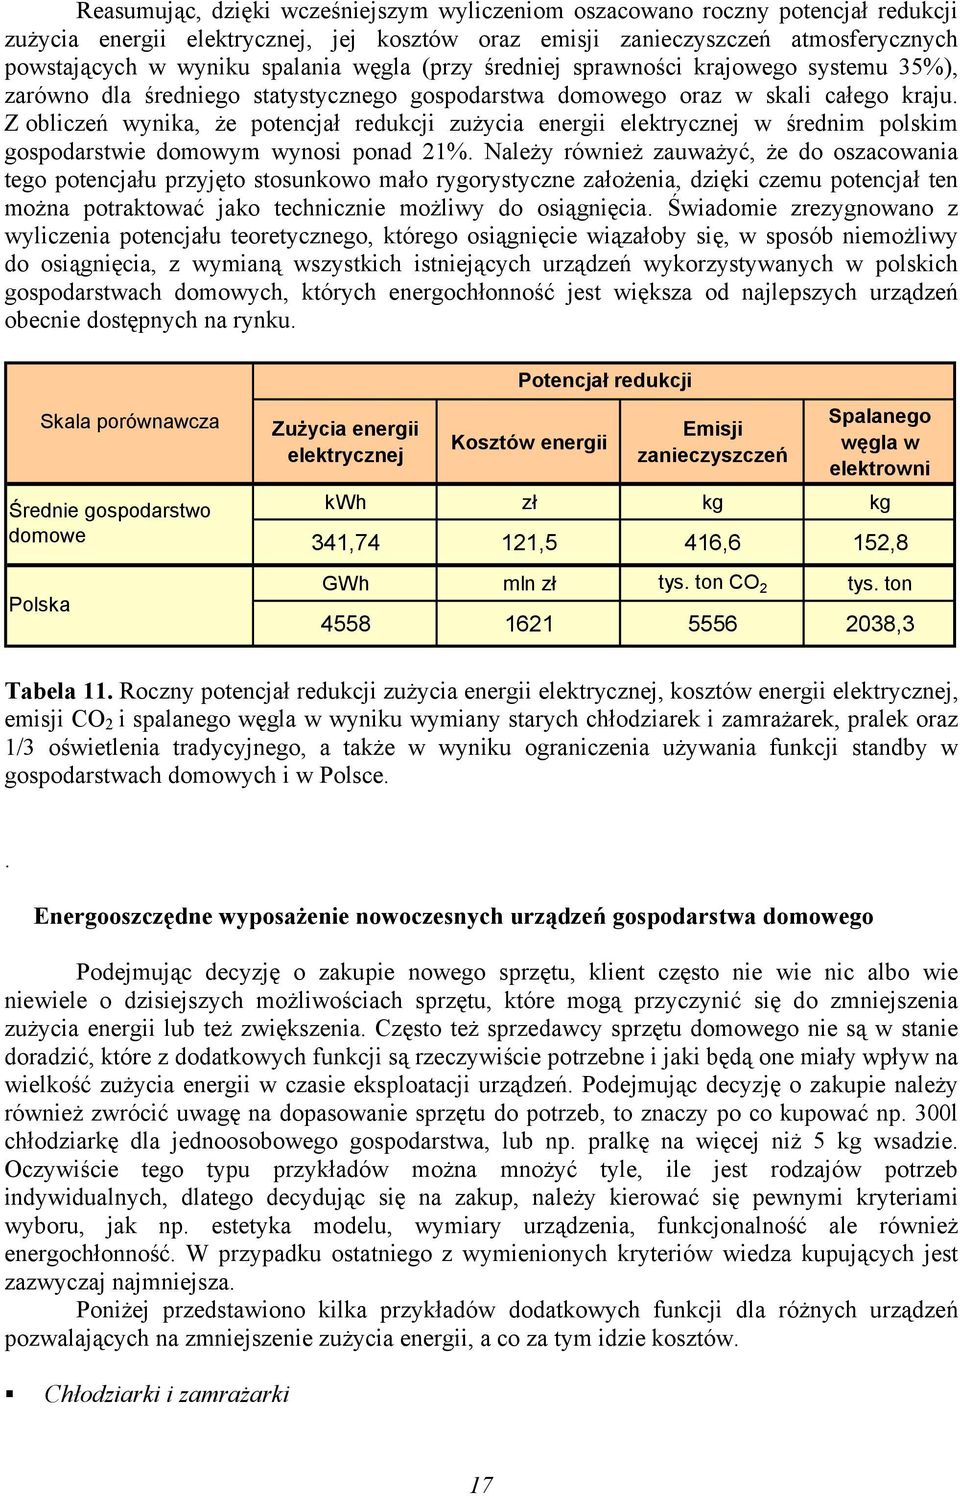 Z obliczeń wynika, że potencjał redukcji zużycia energii elektrycznej w średnim polskim gospodarstwie domowym wynosi ponad 21%.